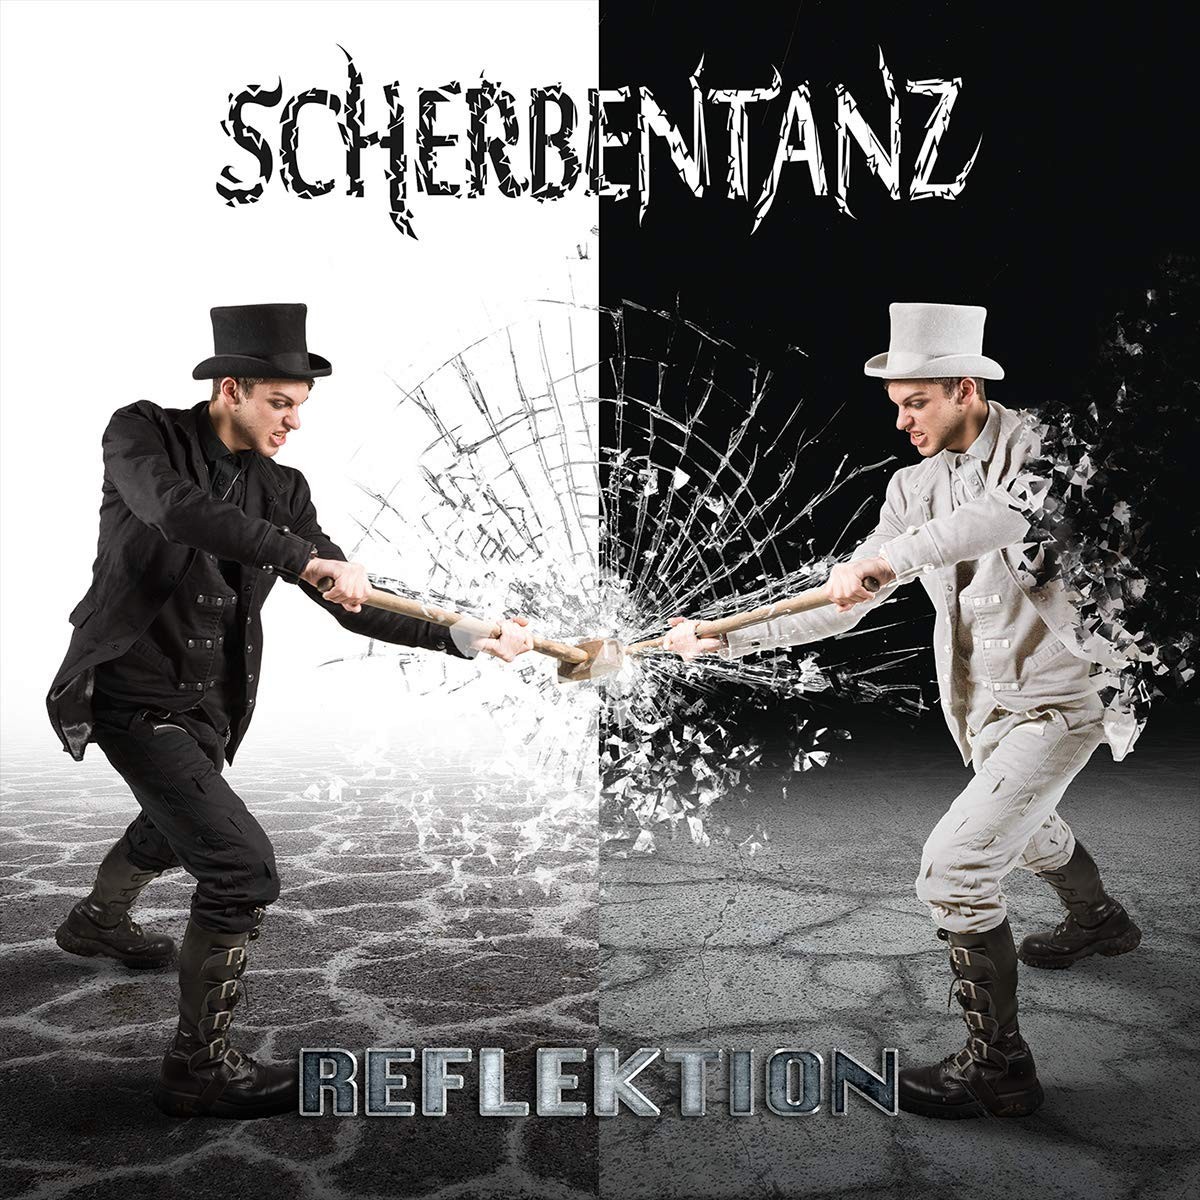 Scherbentanz - Reflektion